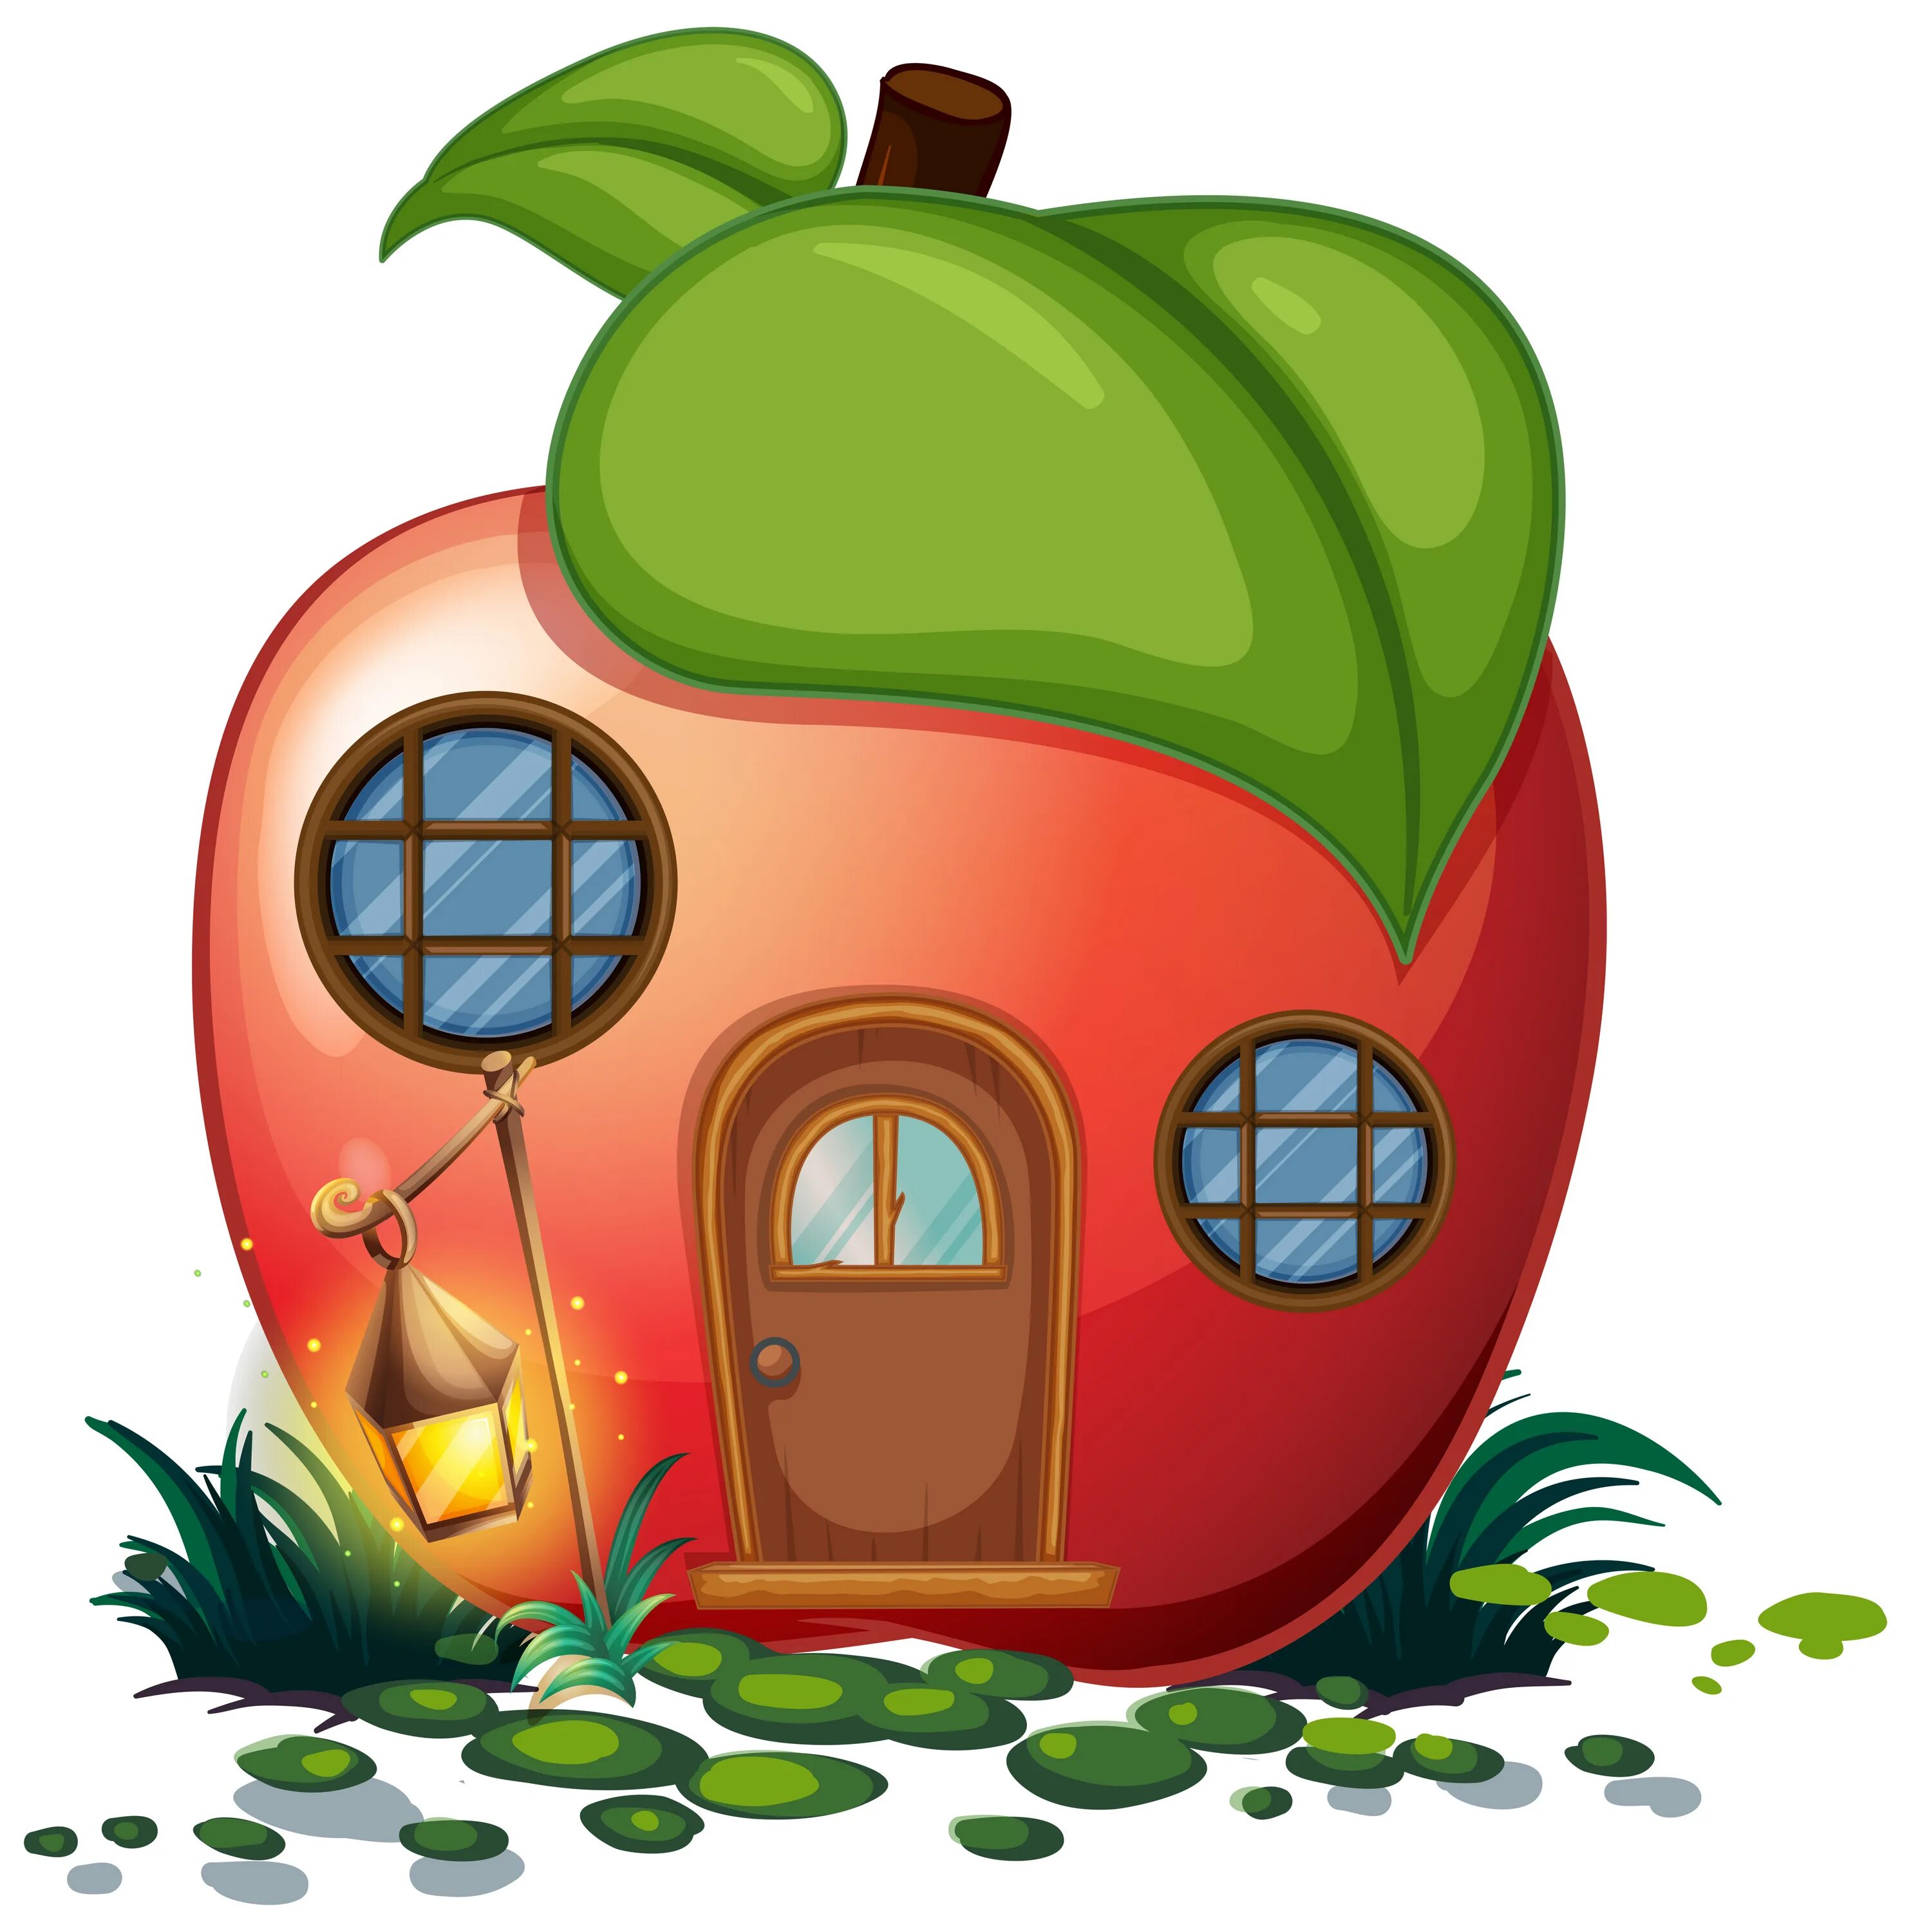 Домик в форме овощей и фруктов. Домики в виде овощей и фруктов. Сказочный домик в виде яблоко. Мультяшные домики.